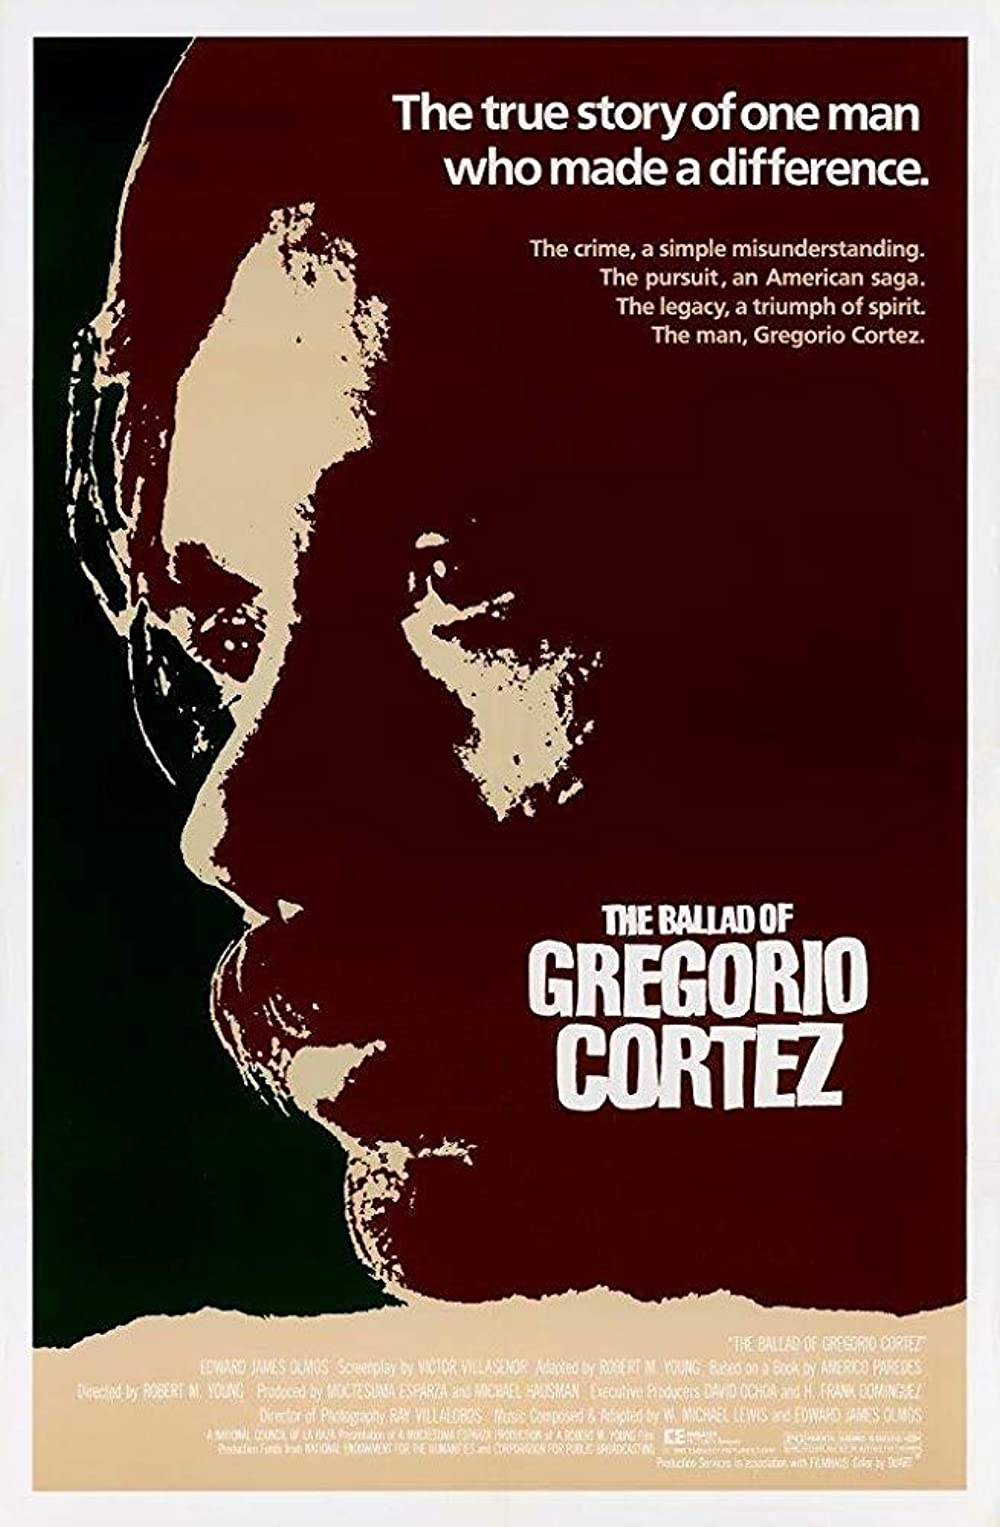 Ballad of Gregorio Cortez